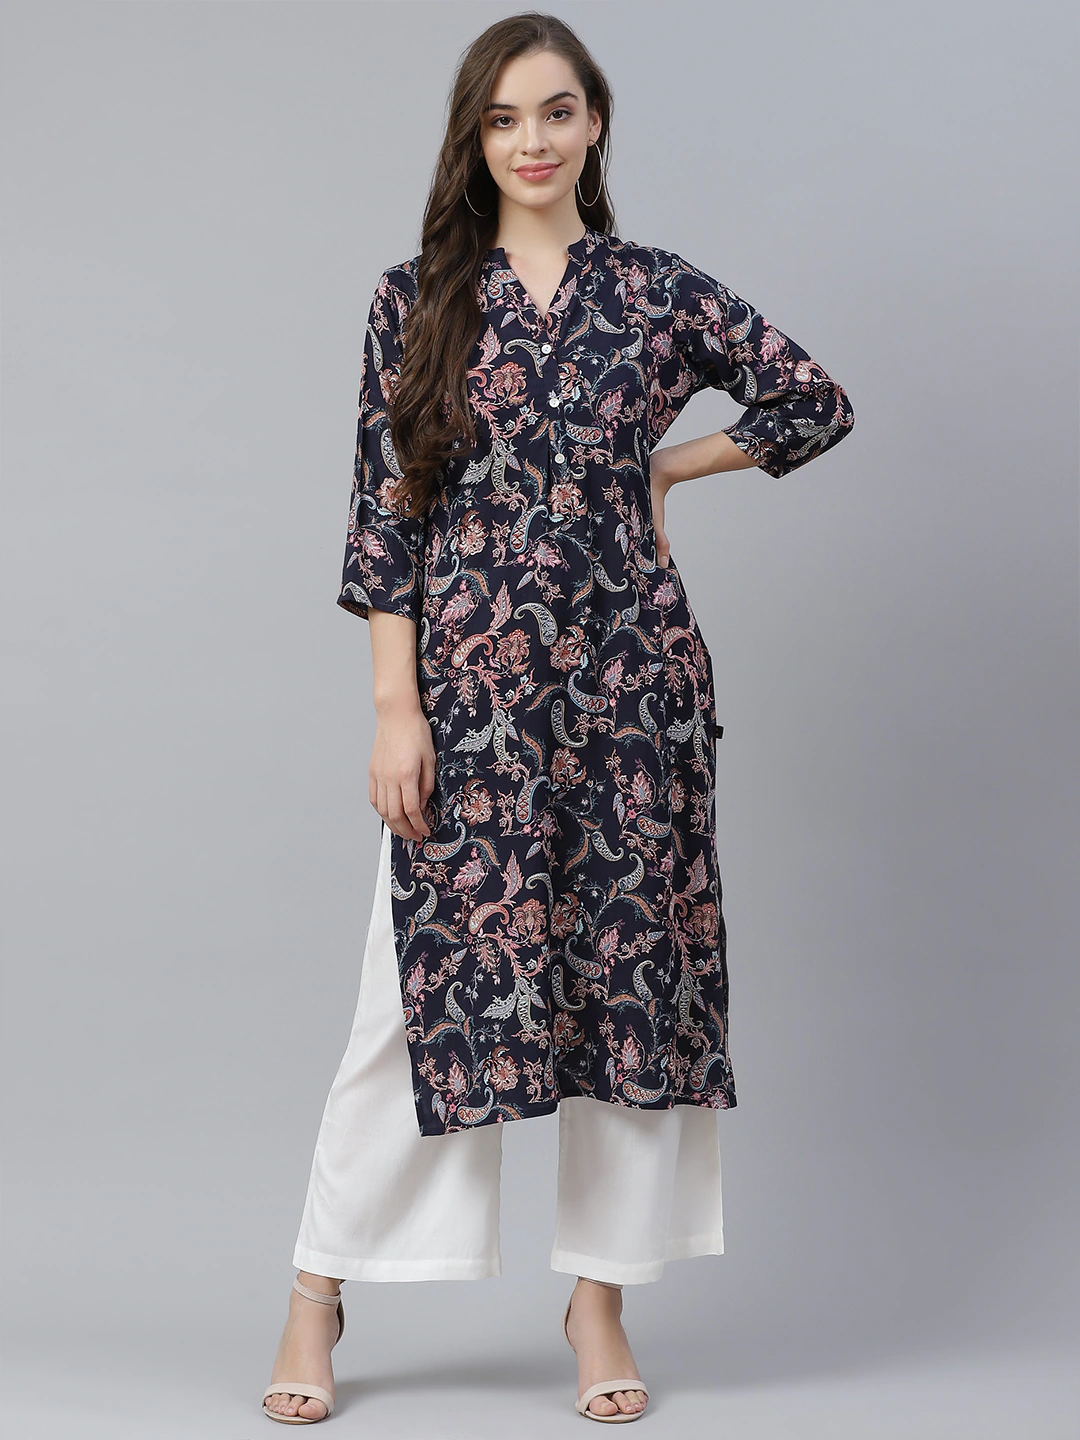 Discover 162+ ladies suit kurti design best